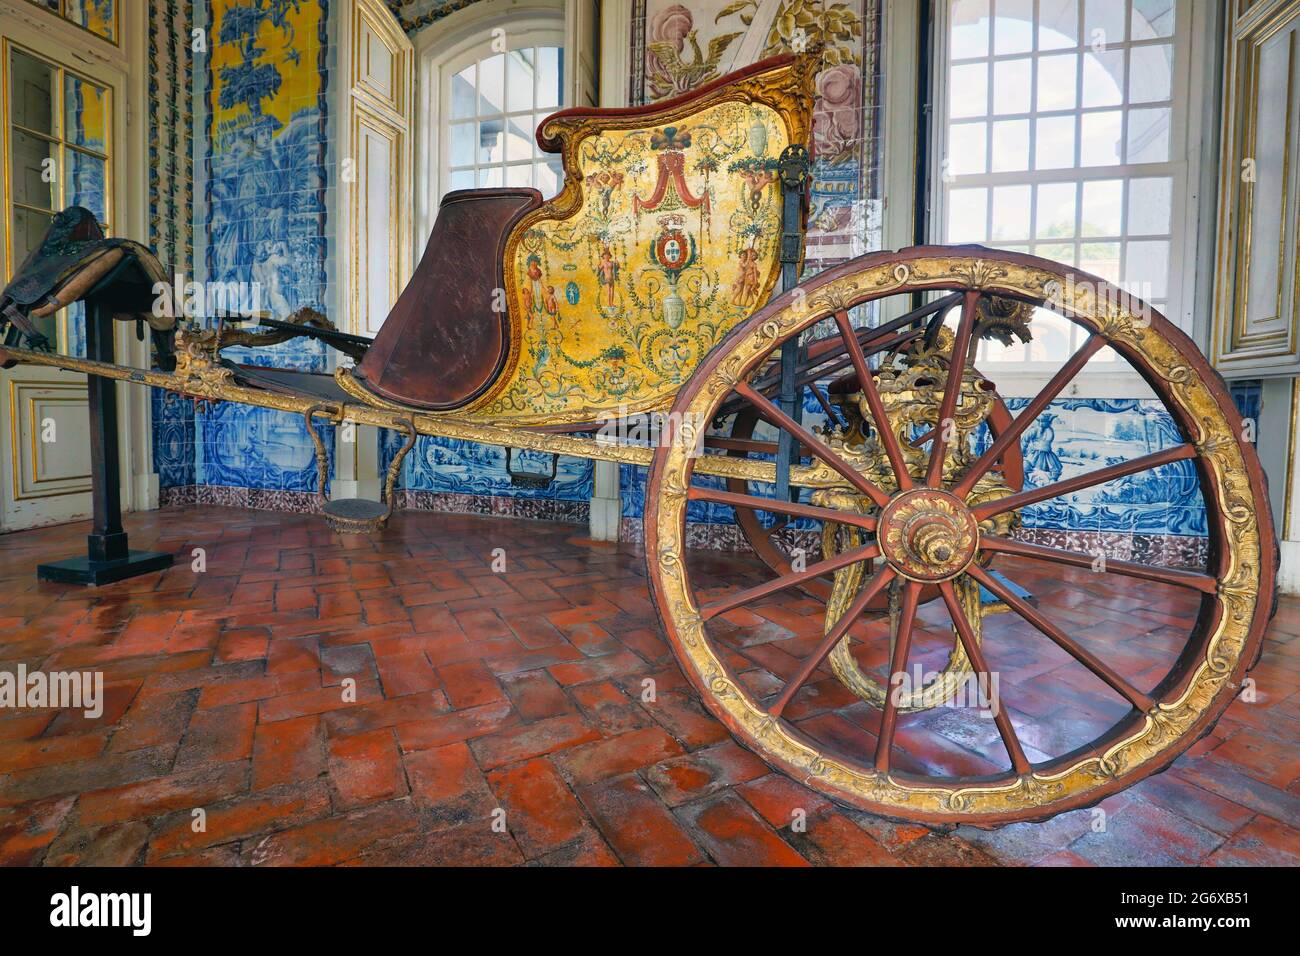 Queluz-Palast, Gemeinde Sintra, Portugal. Reich verzierte Pferdekutsche im Corredor dos Azulejos oder gefliester Flur, auch bekannt als t Stockfoto